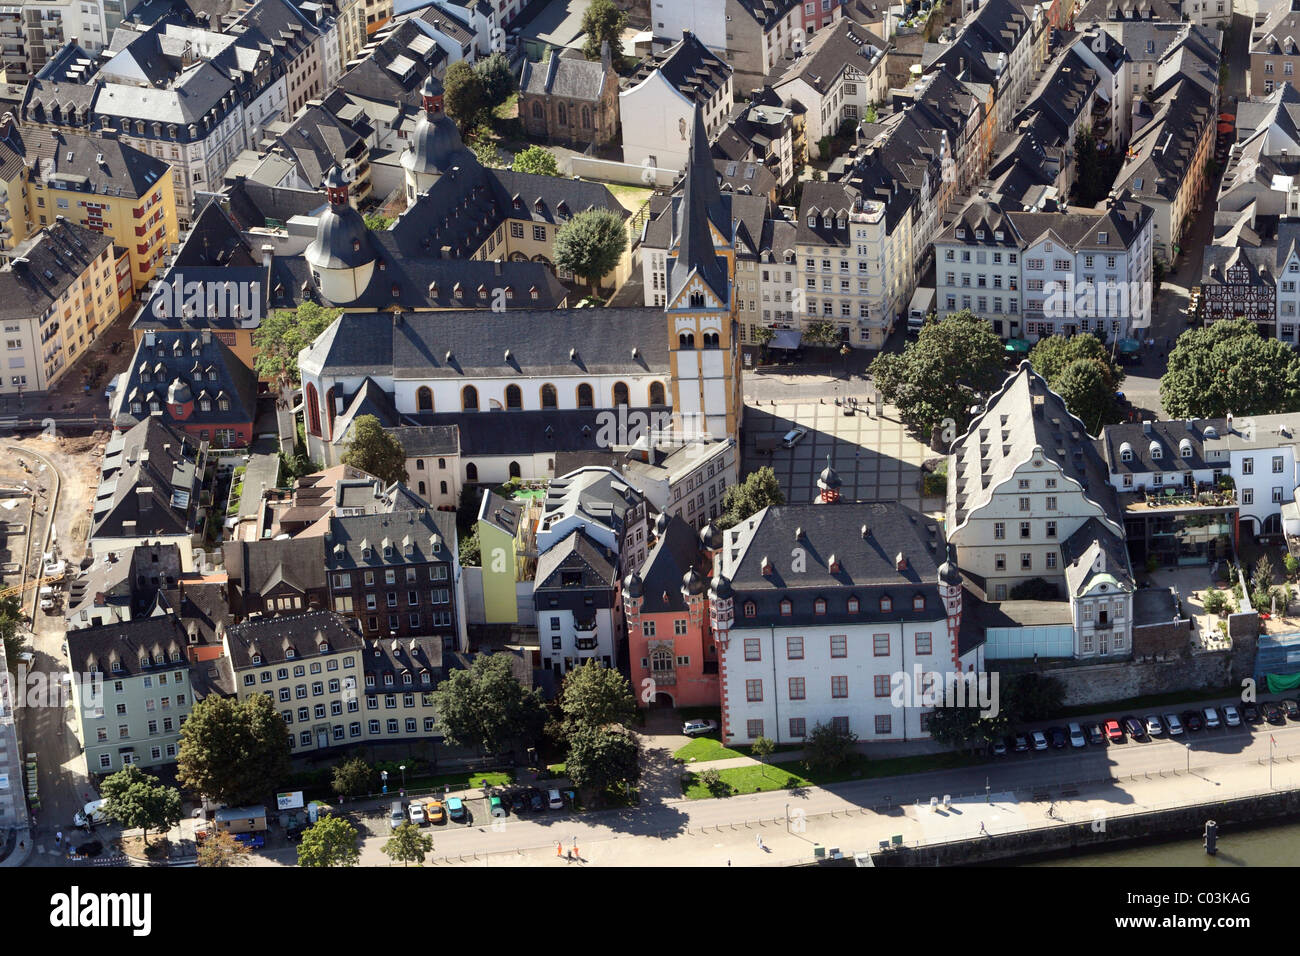 Antenne zu sehen, Altstadt, Koblenz, Rheinland-Pfalz, Deutschland, Europa Stockfoto